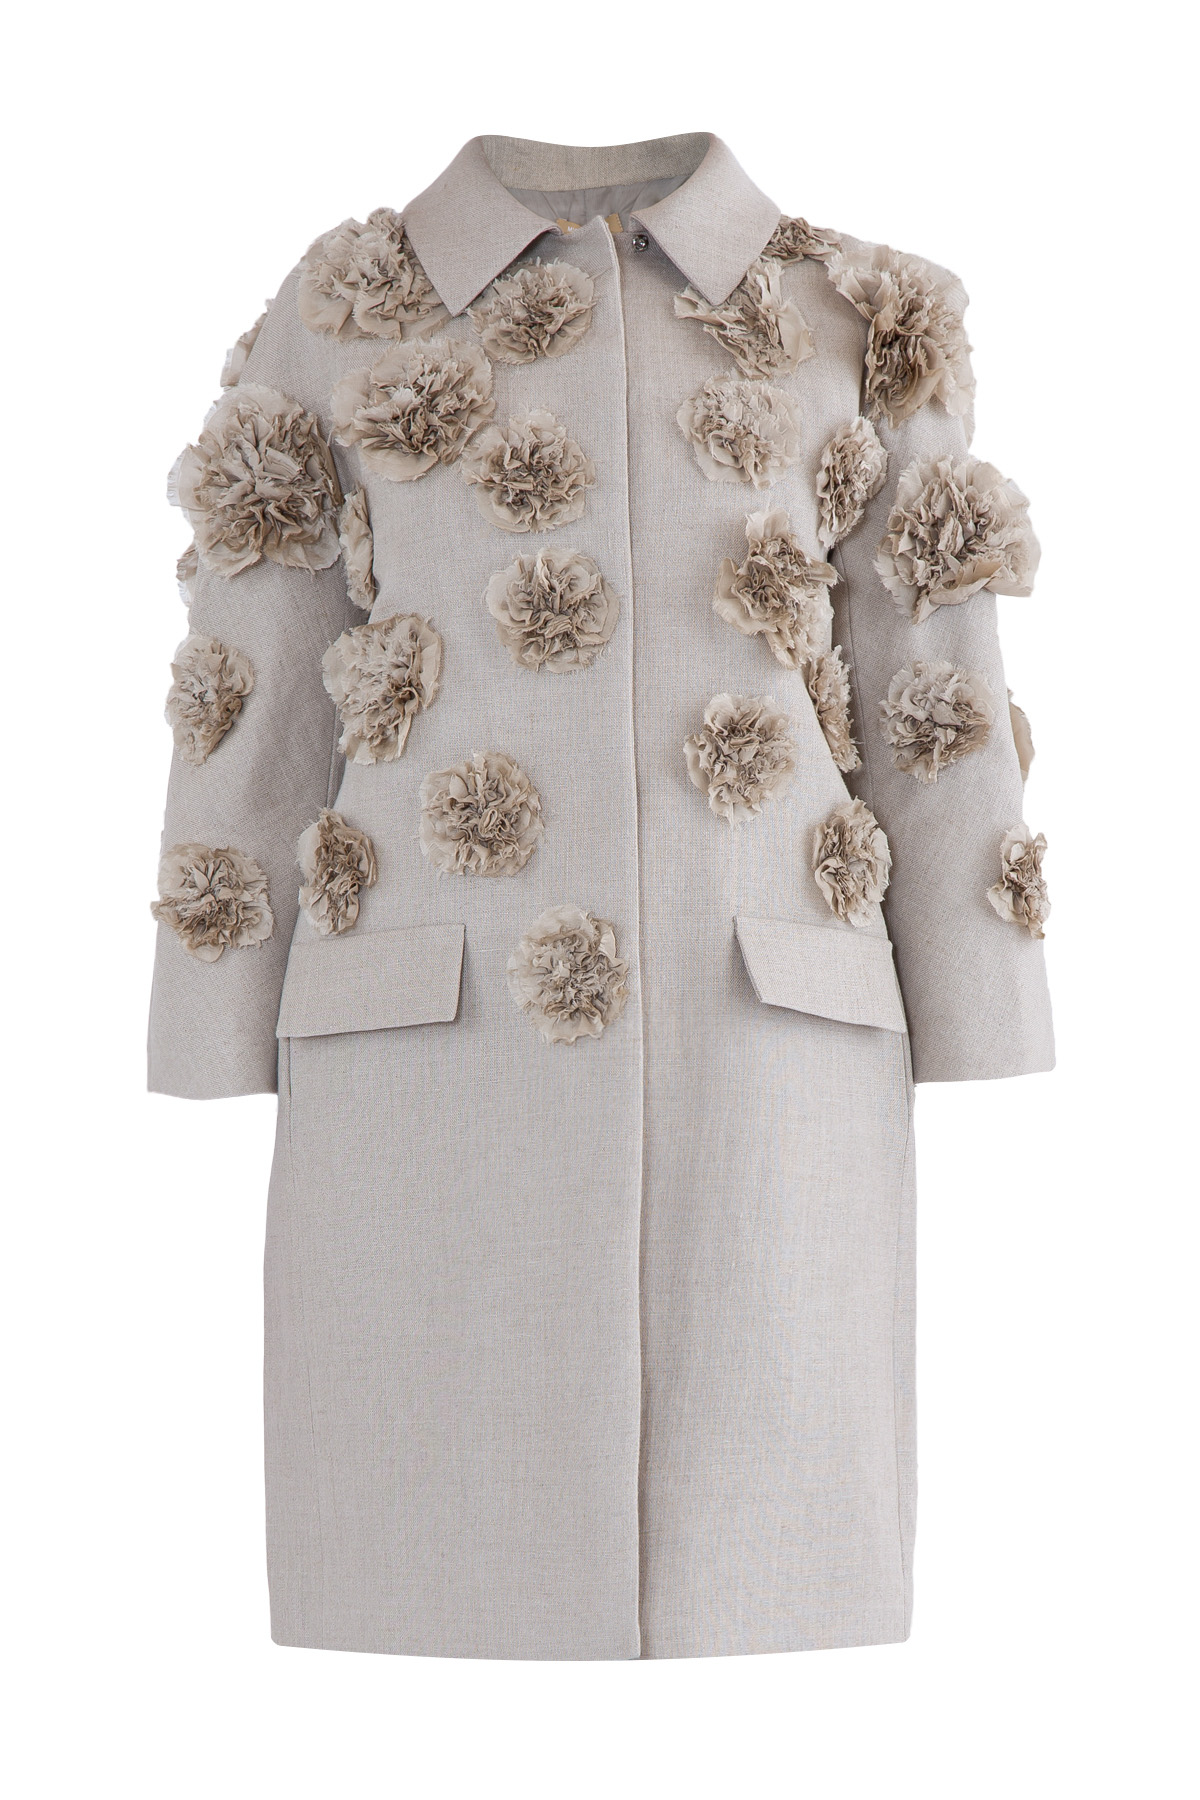 Пальто изо льна с аппликациями в виде цветочных бутонов MICHAEL KORS, размер 2 - фото 1